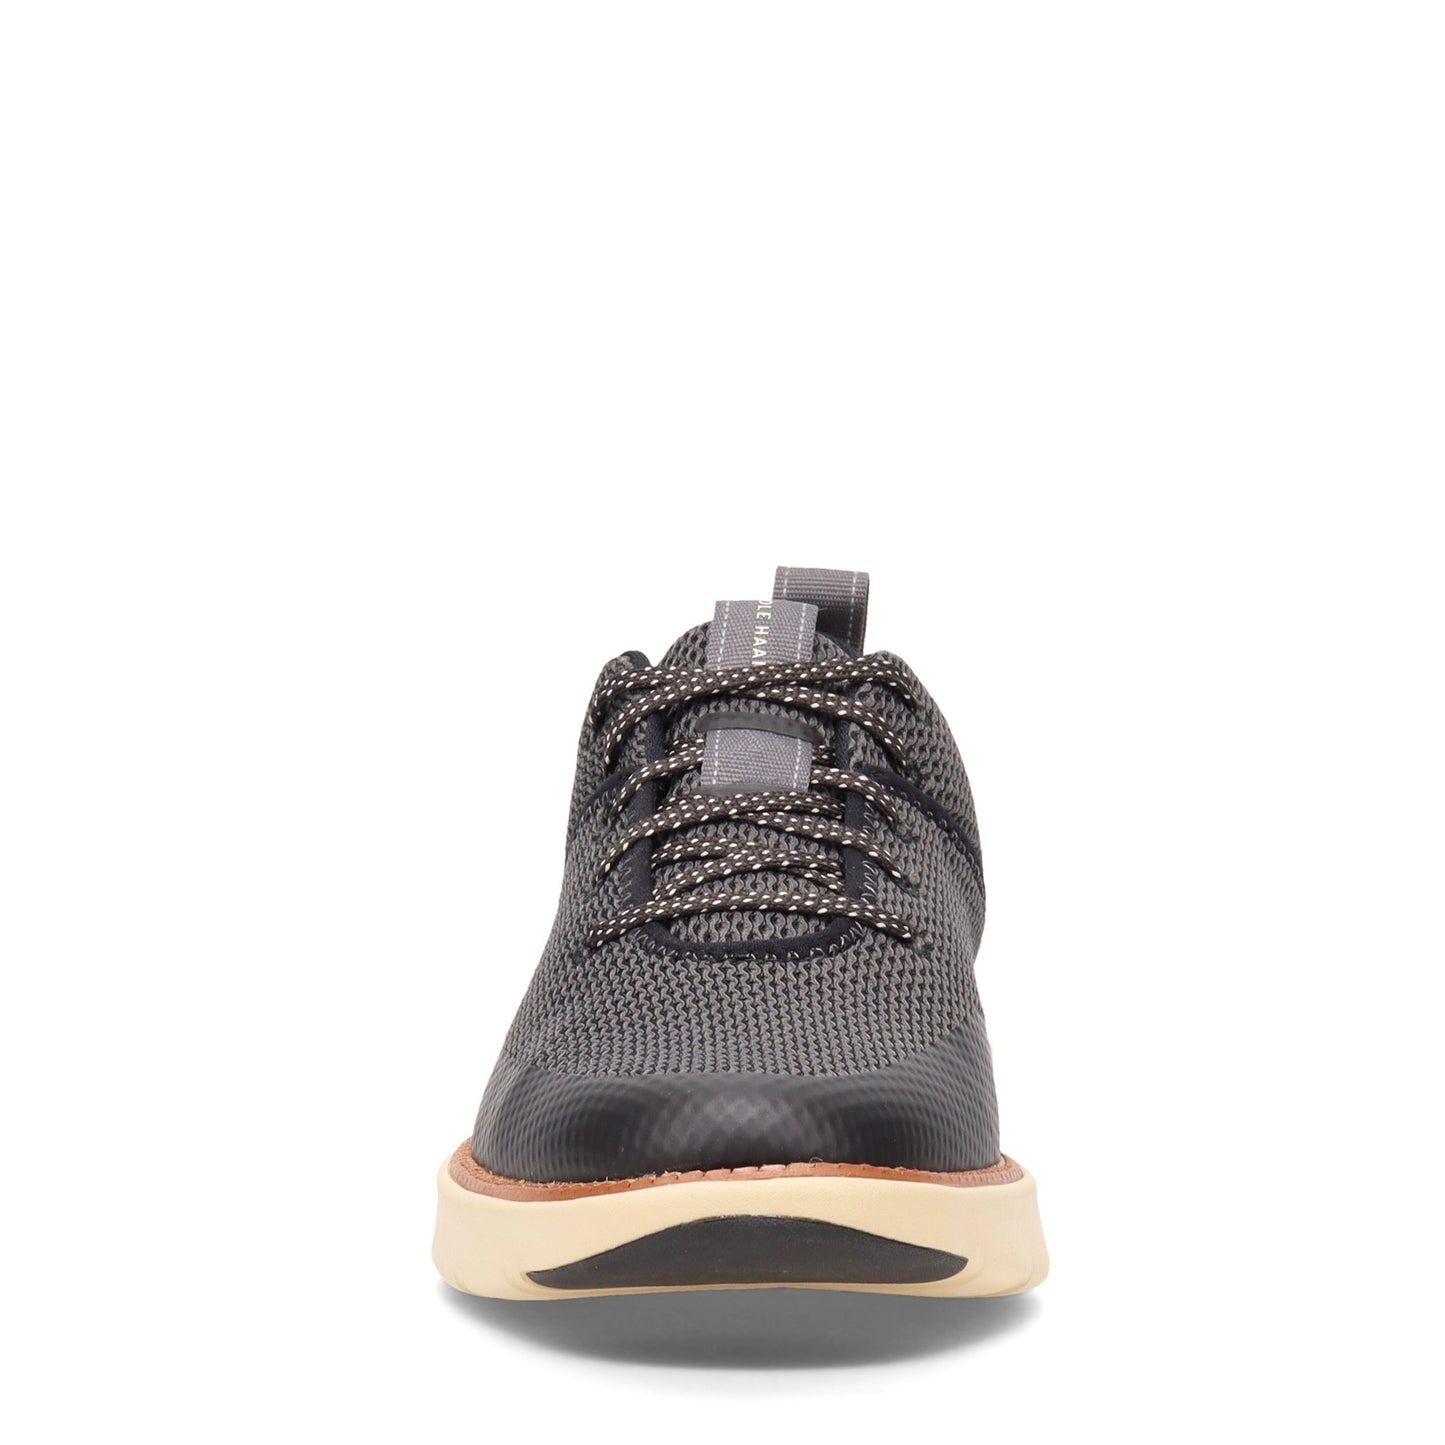 Peltz Shoes  Men's Cole Haan Grand Atlantic Sneaker BLACK GRAY C34651